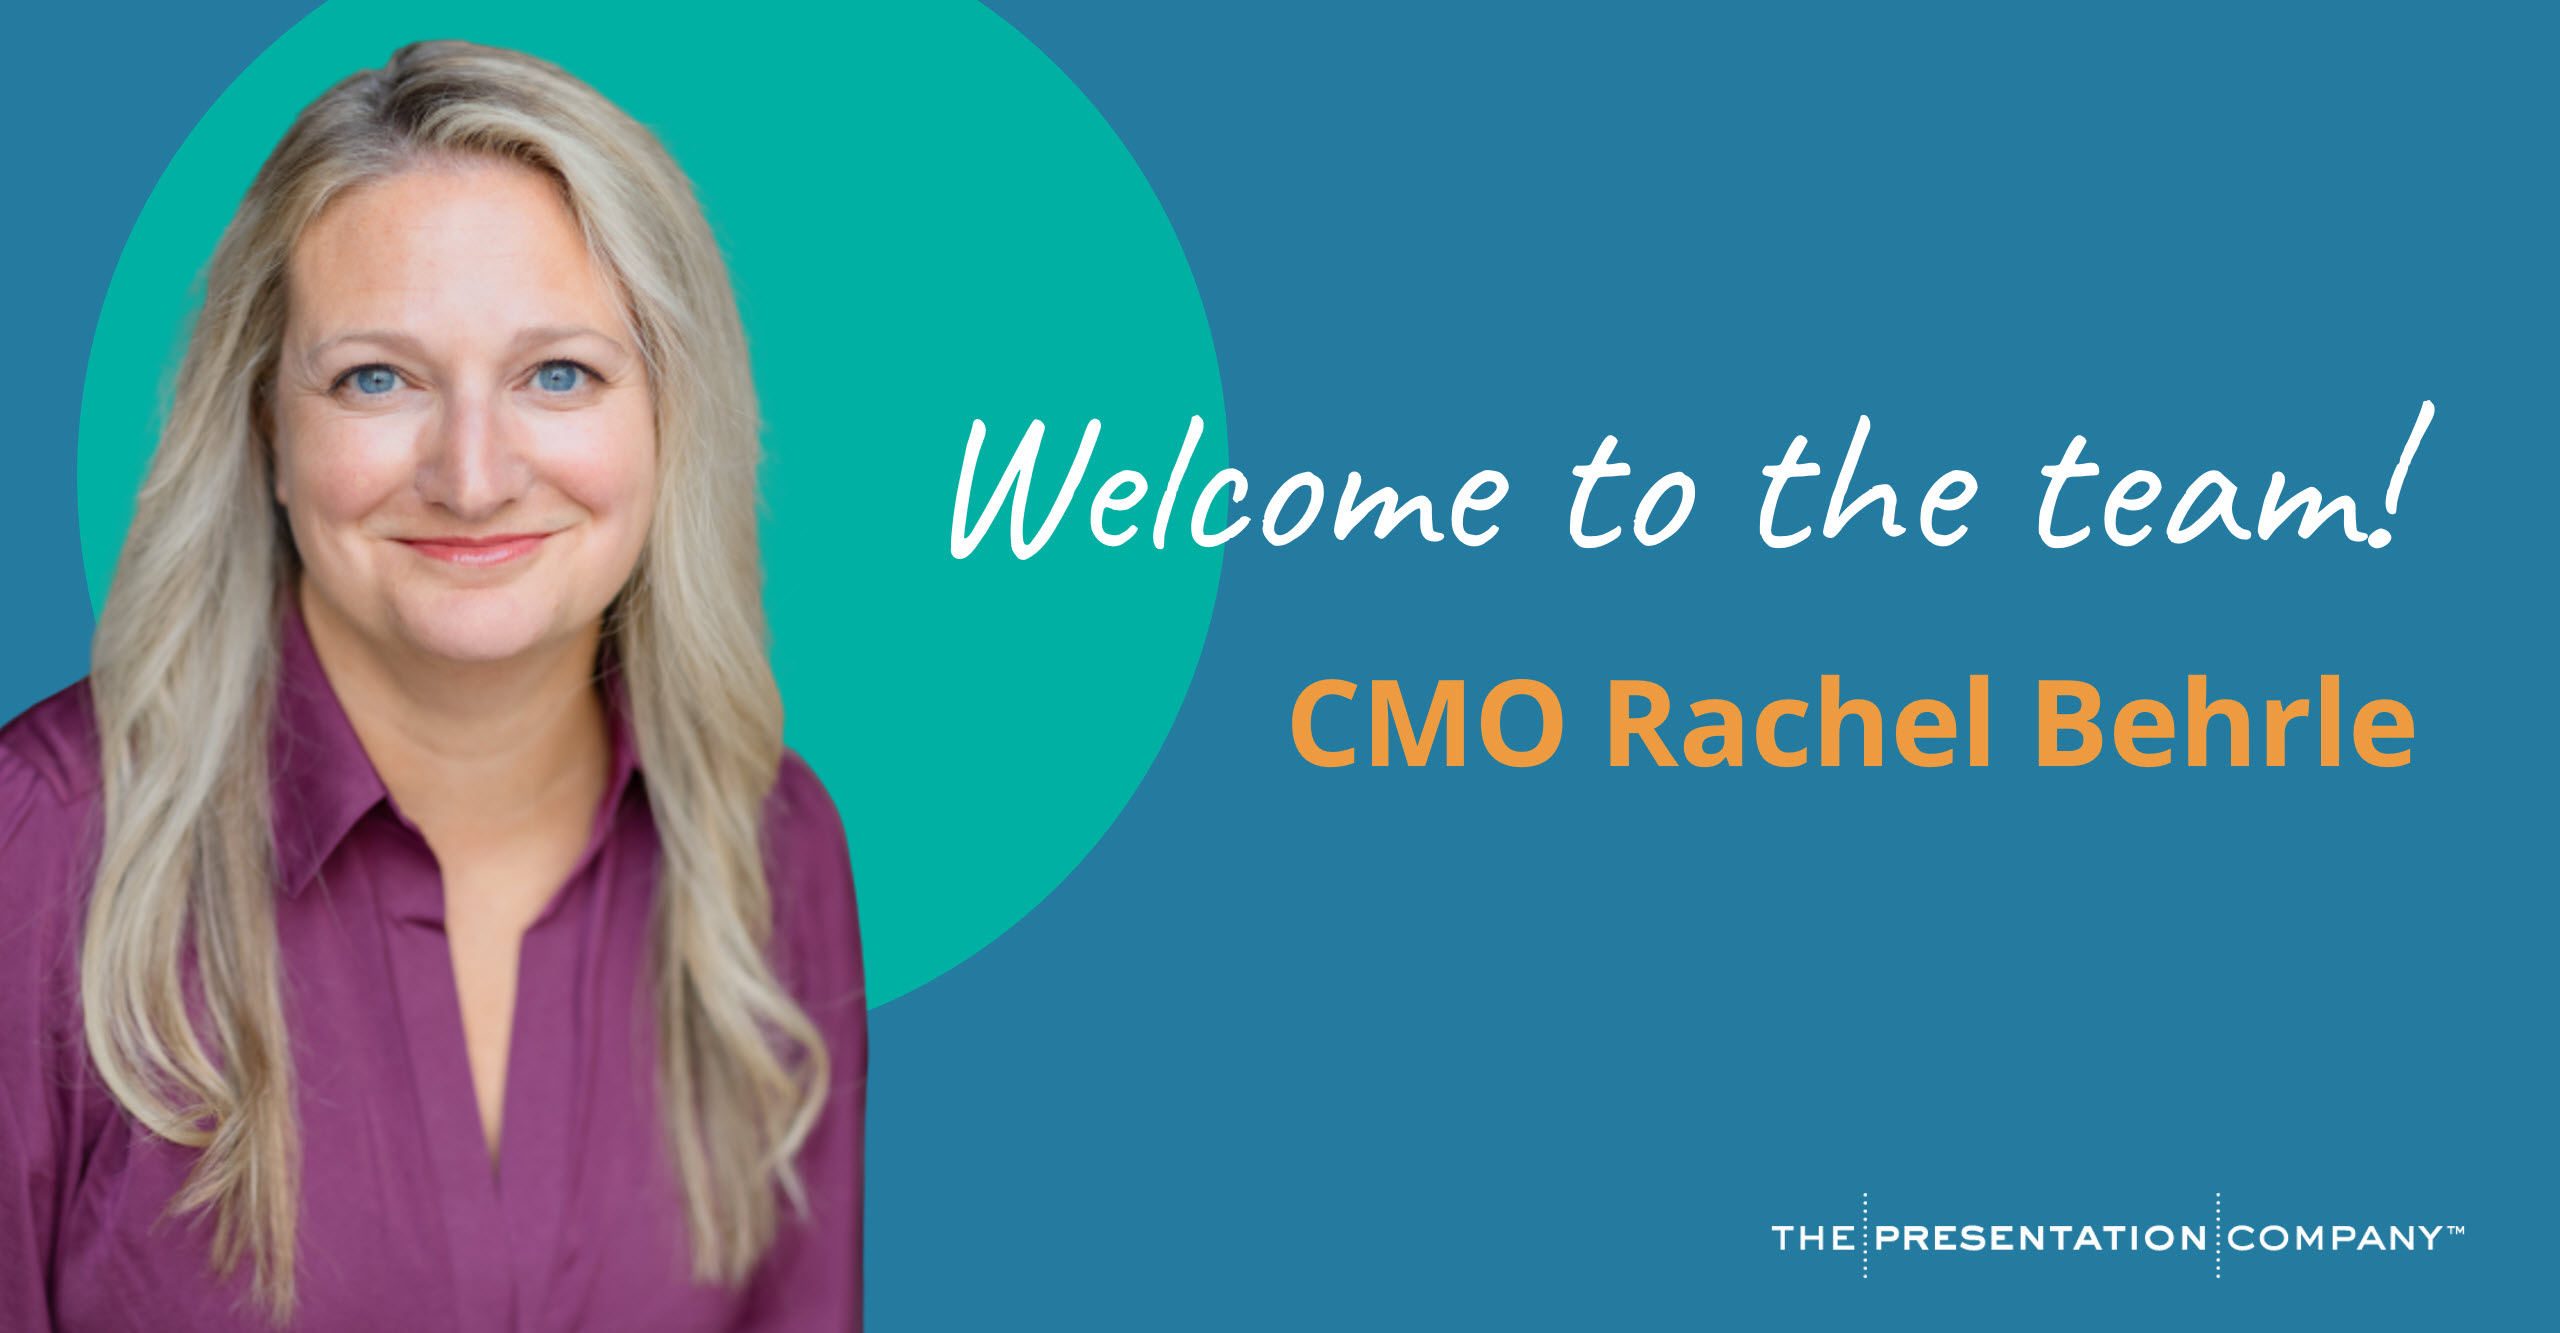 Welcome to TPC, Rachel Behrle!